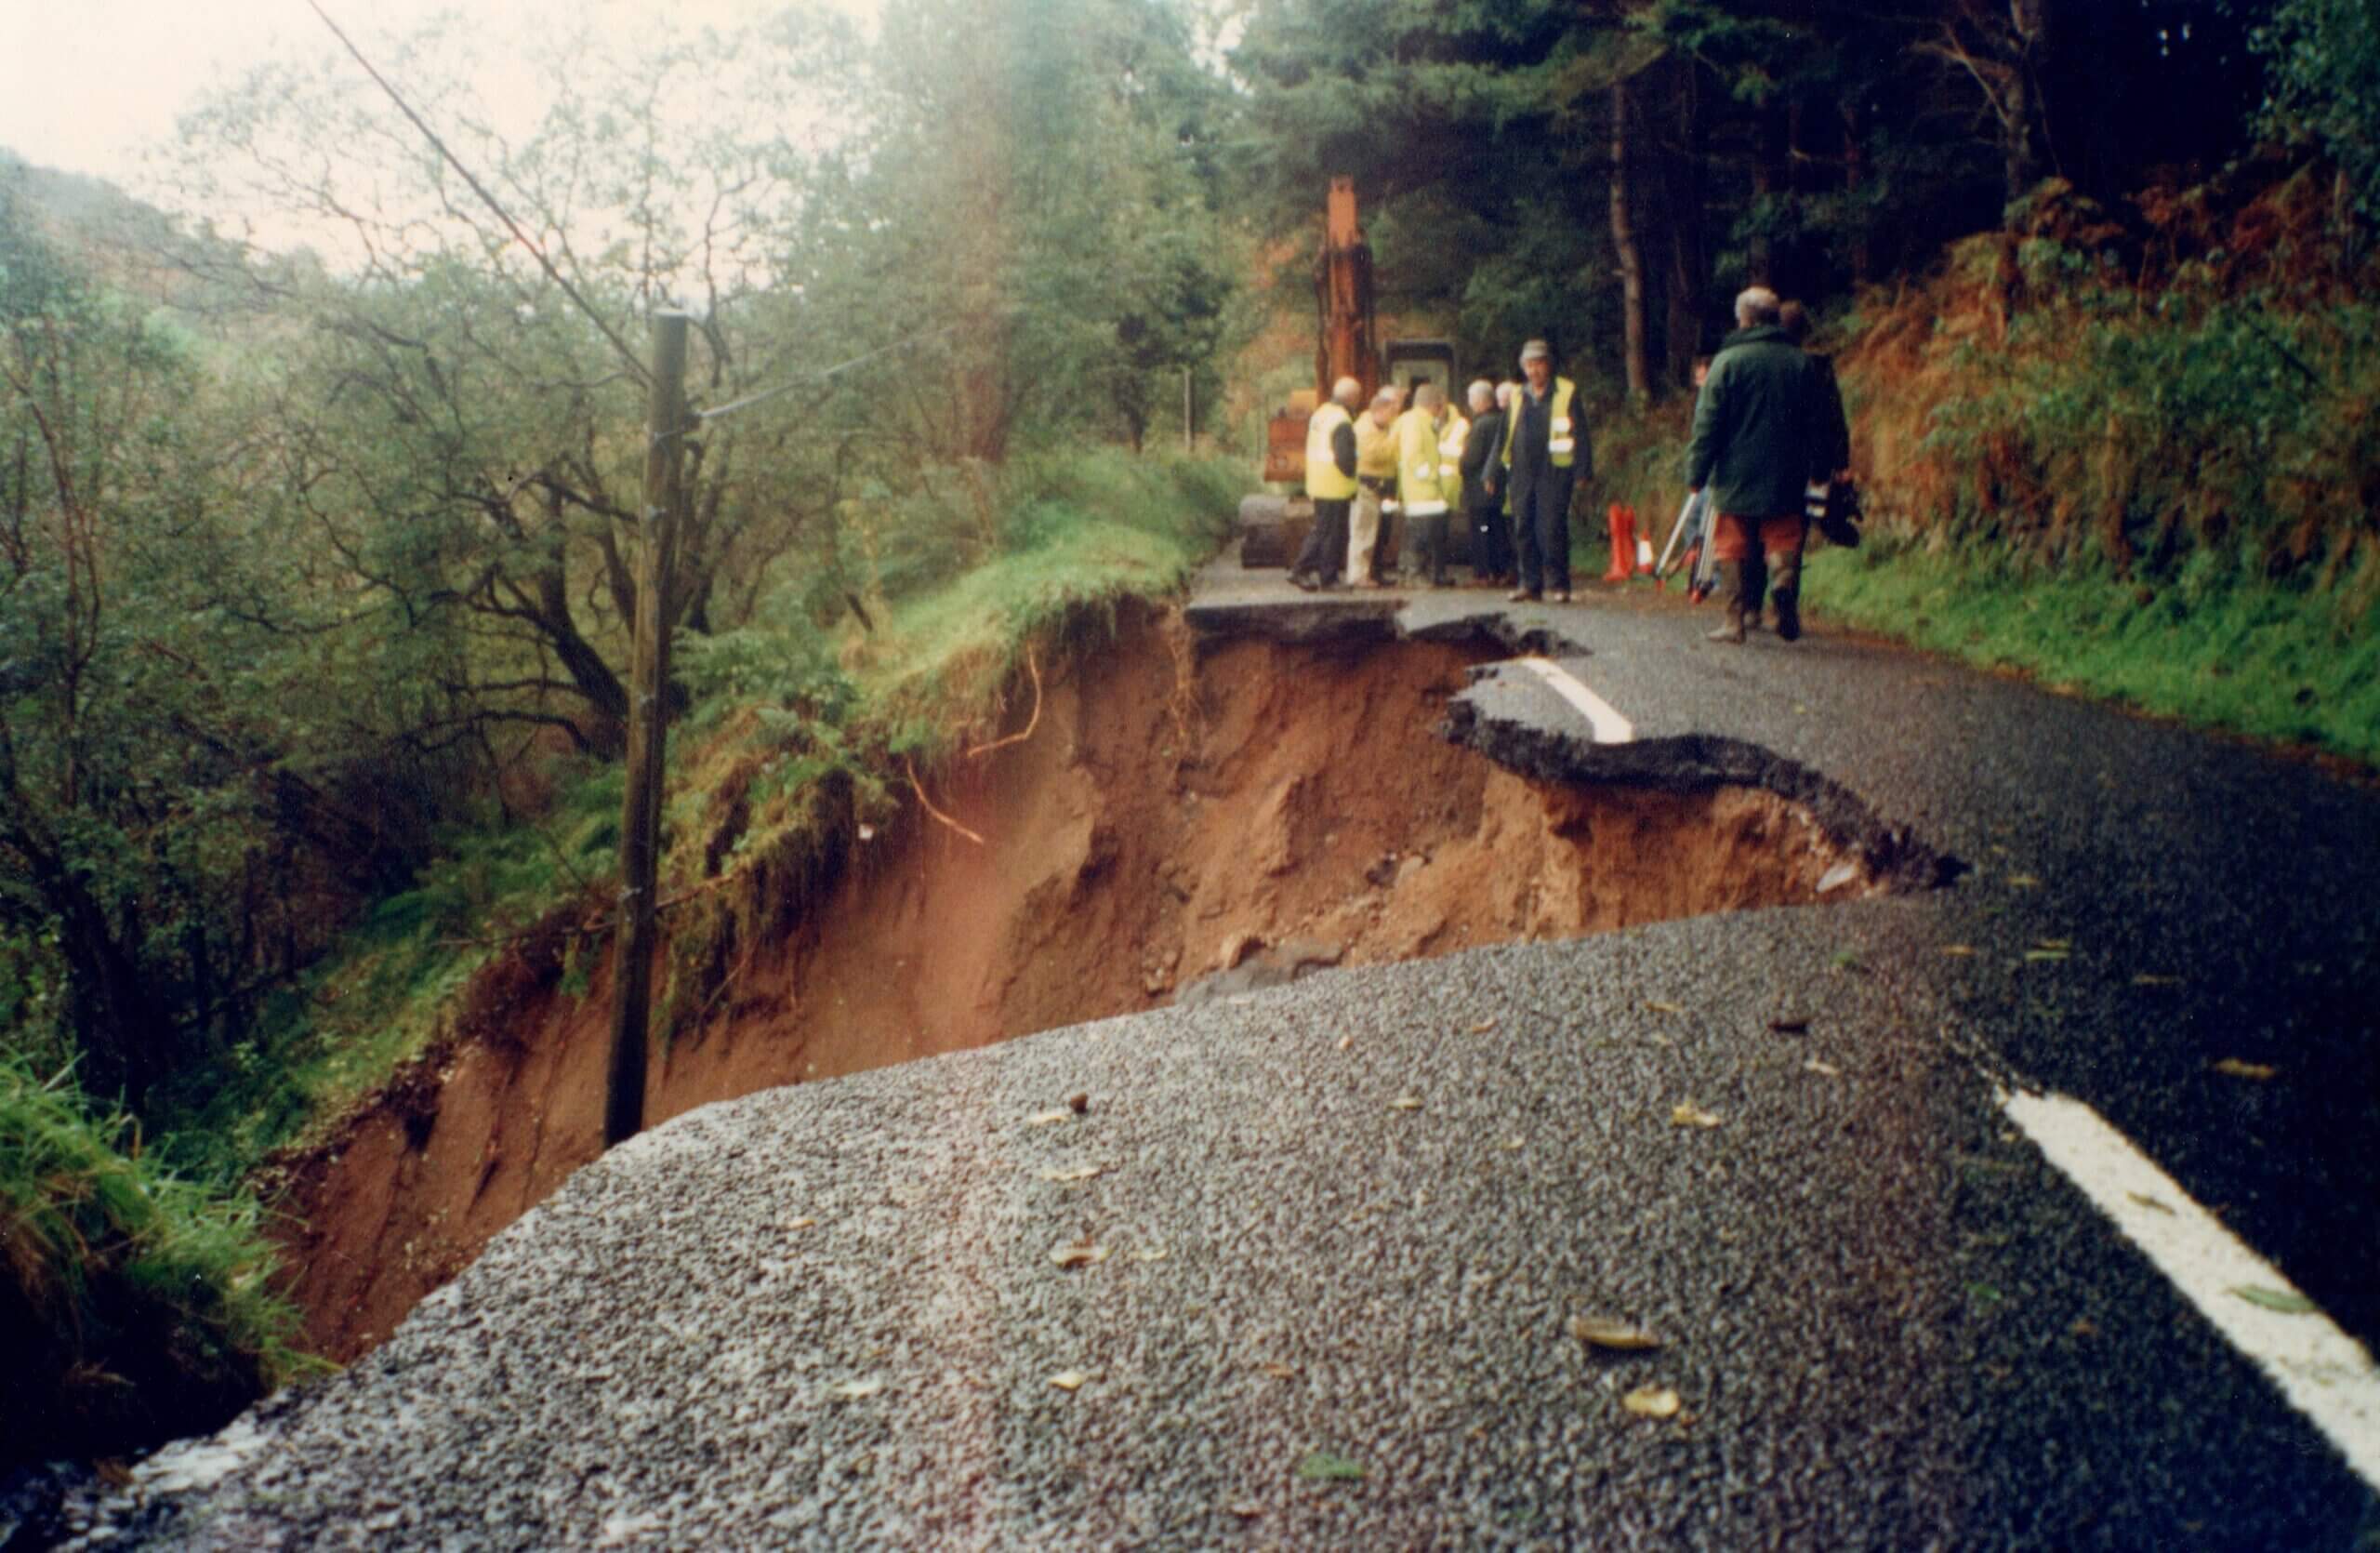 Glenshesk landslide on the Inlet, November 1998